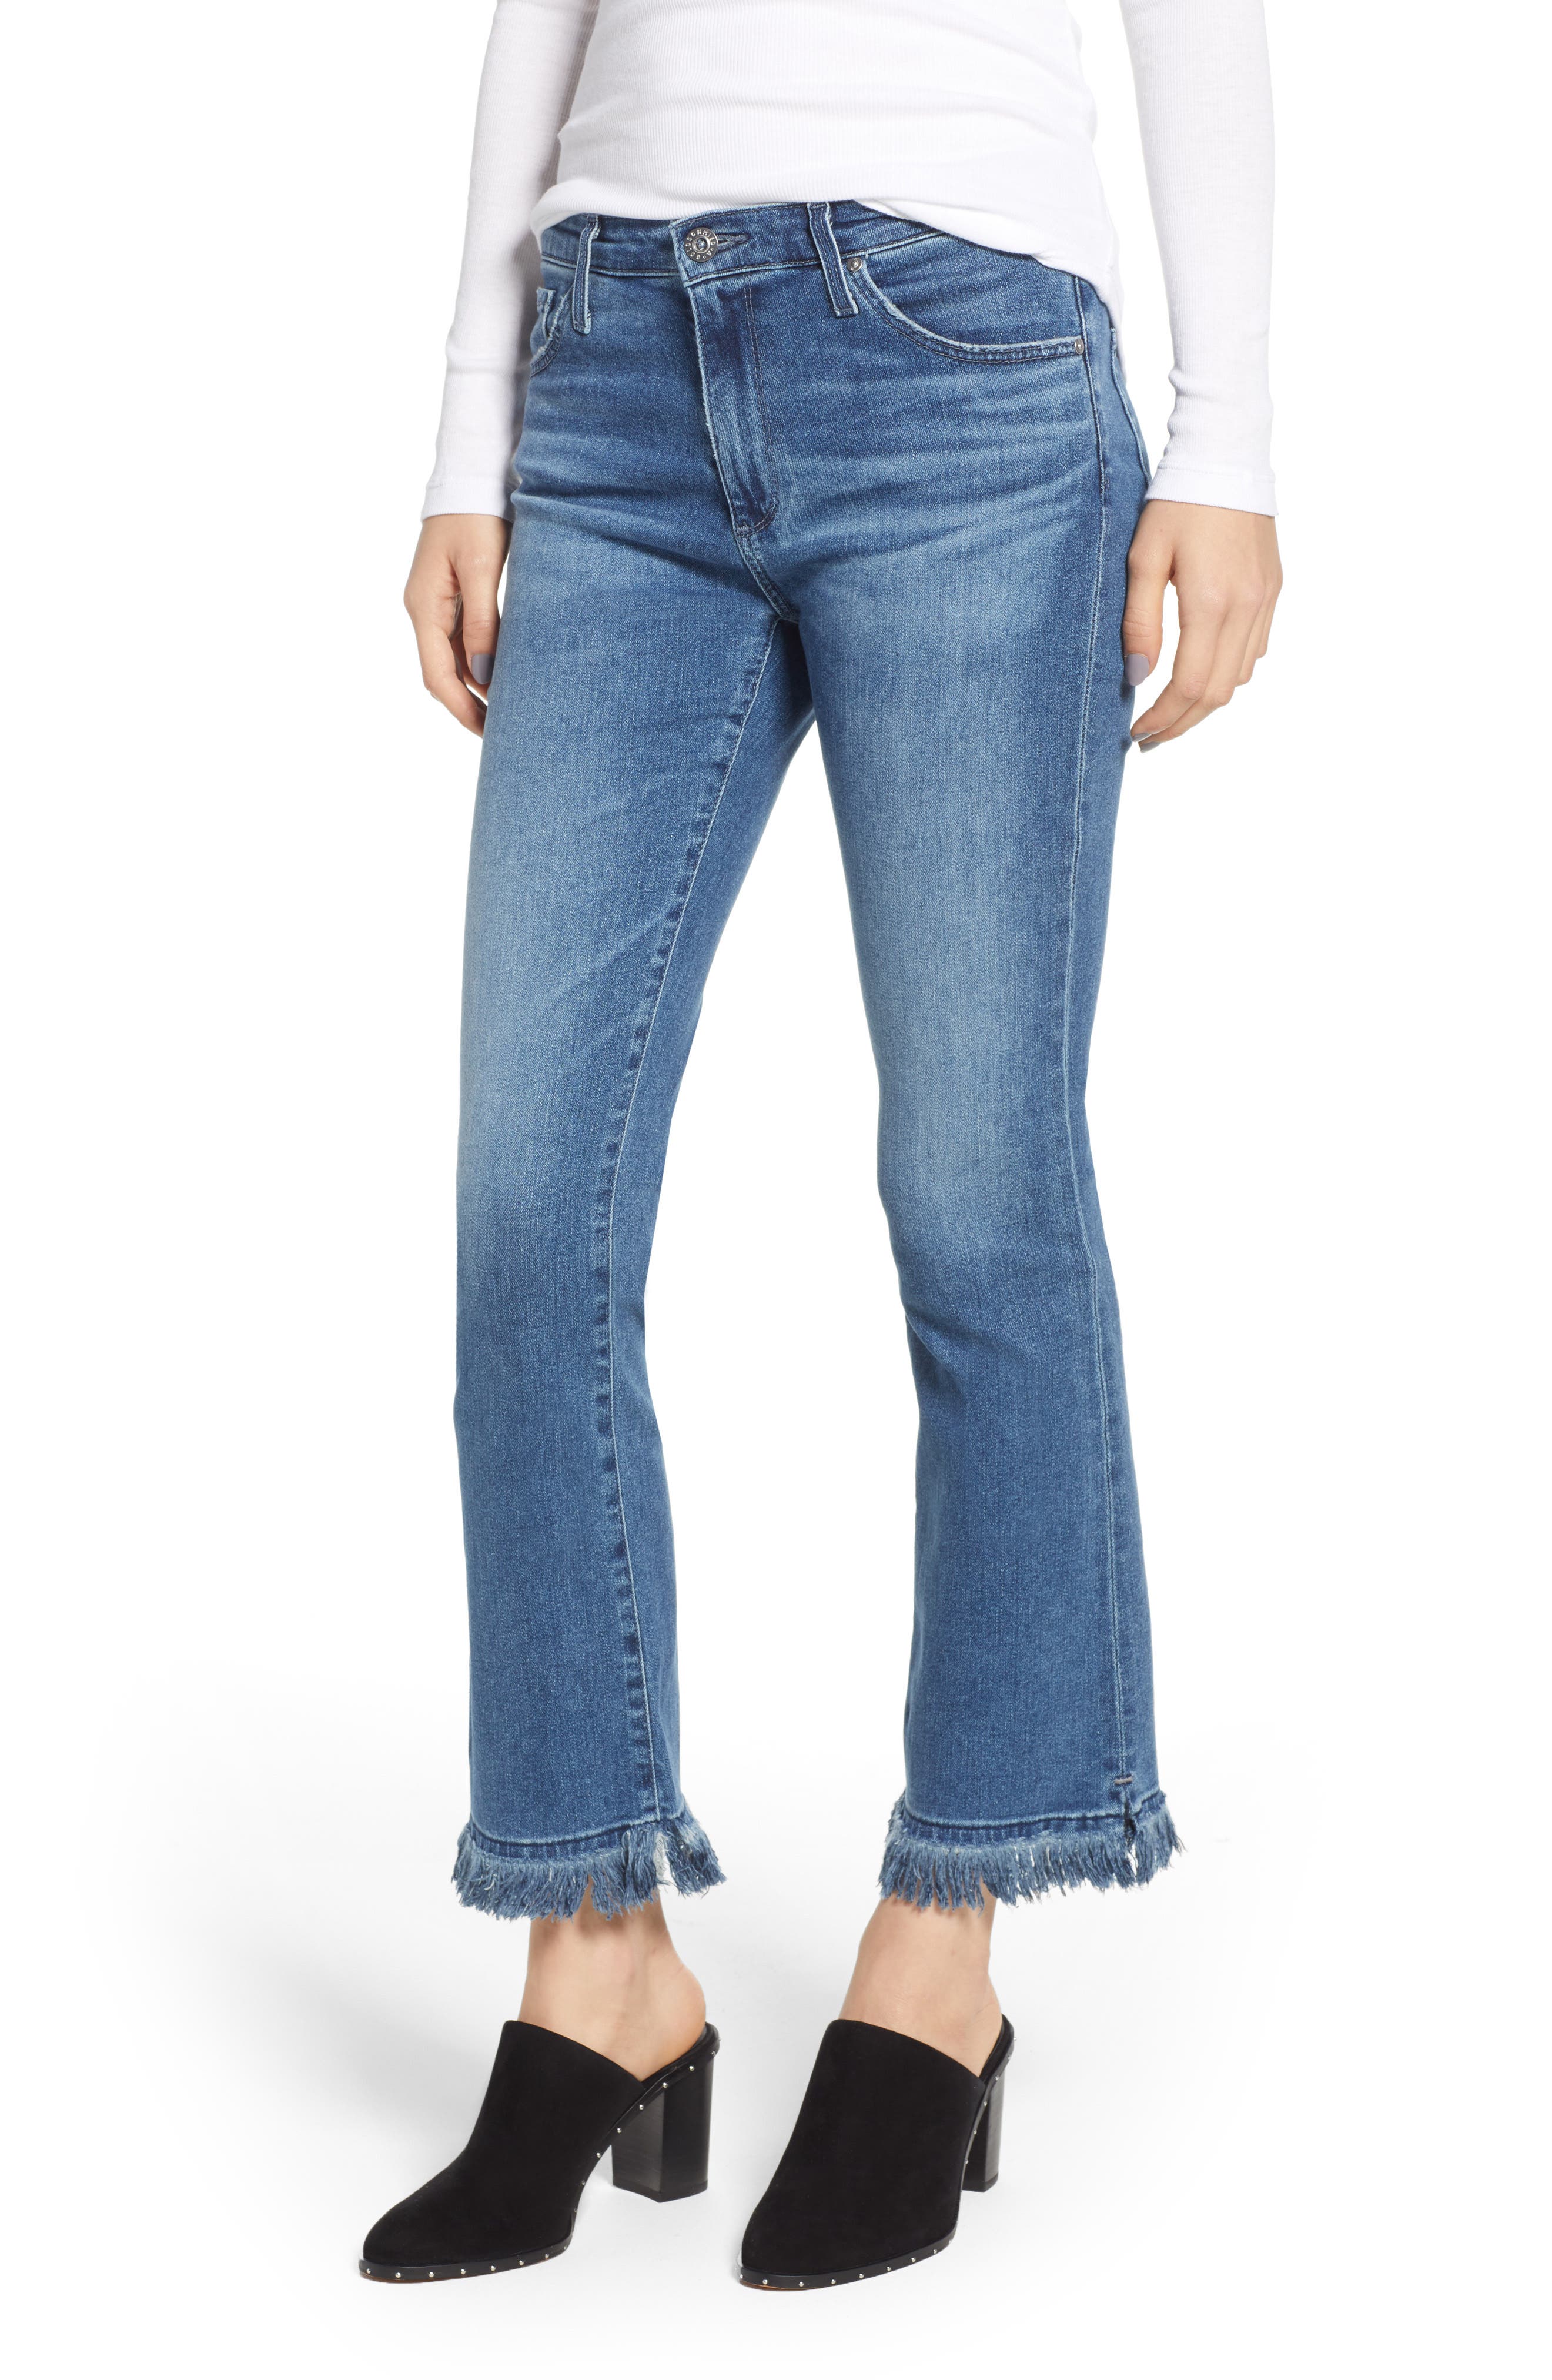 cropped fringe jeans